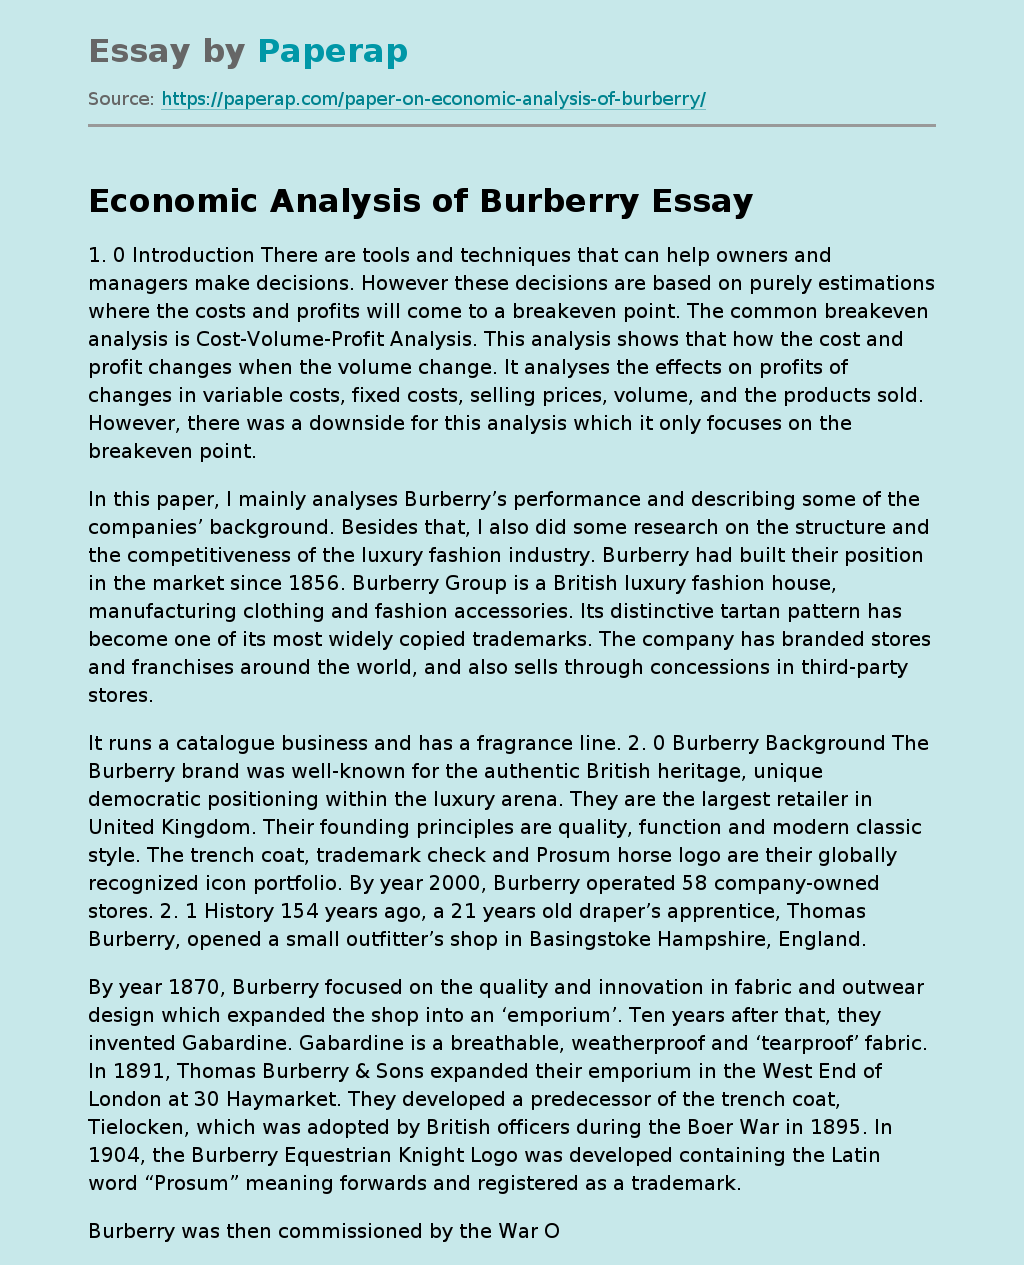 Economic Analysis of Burberry